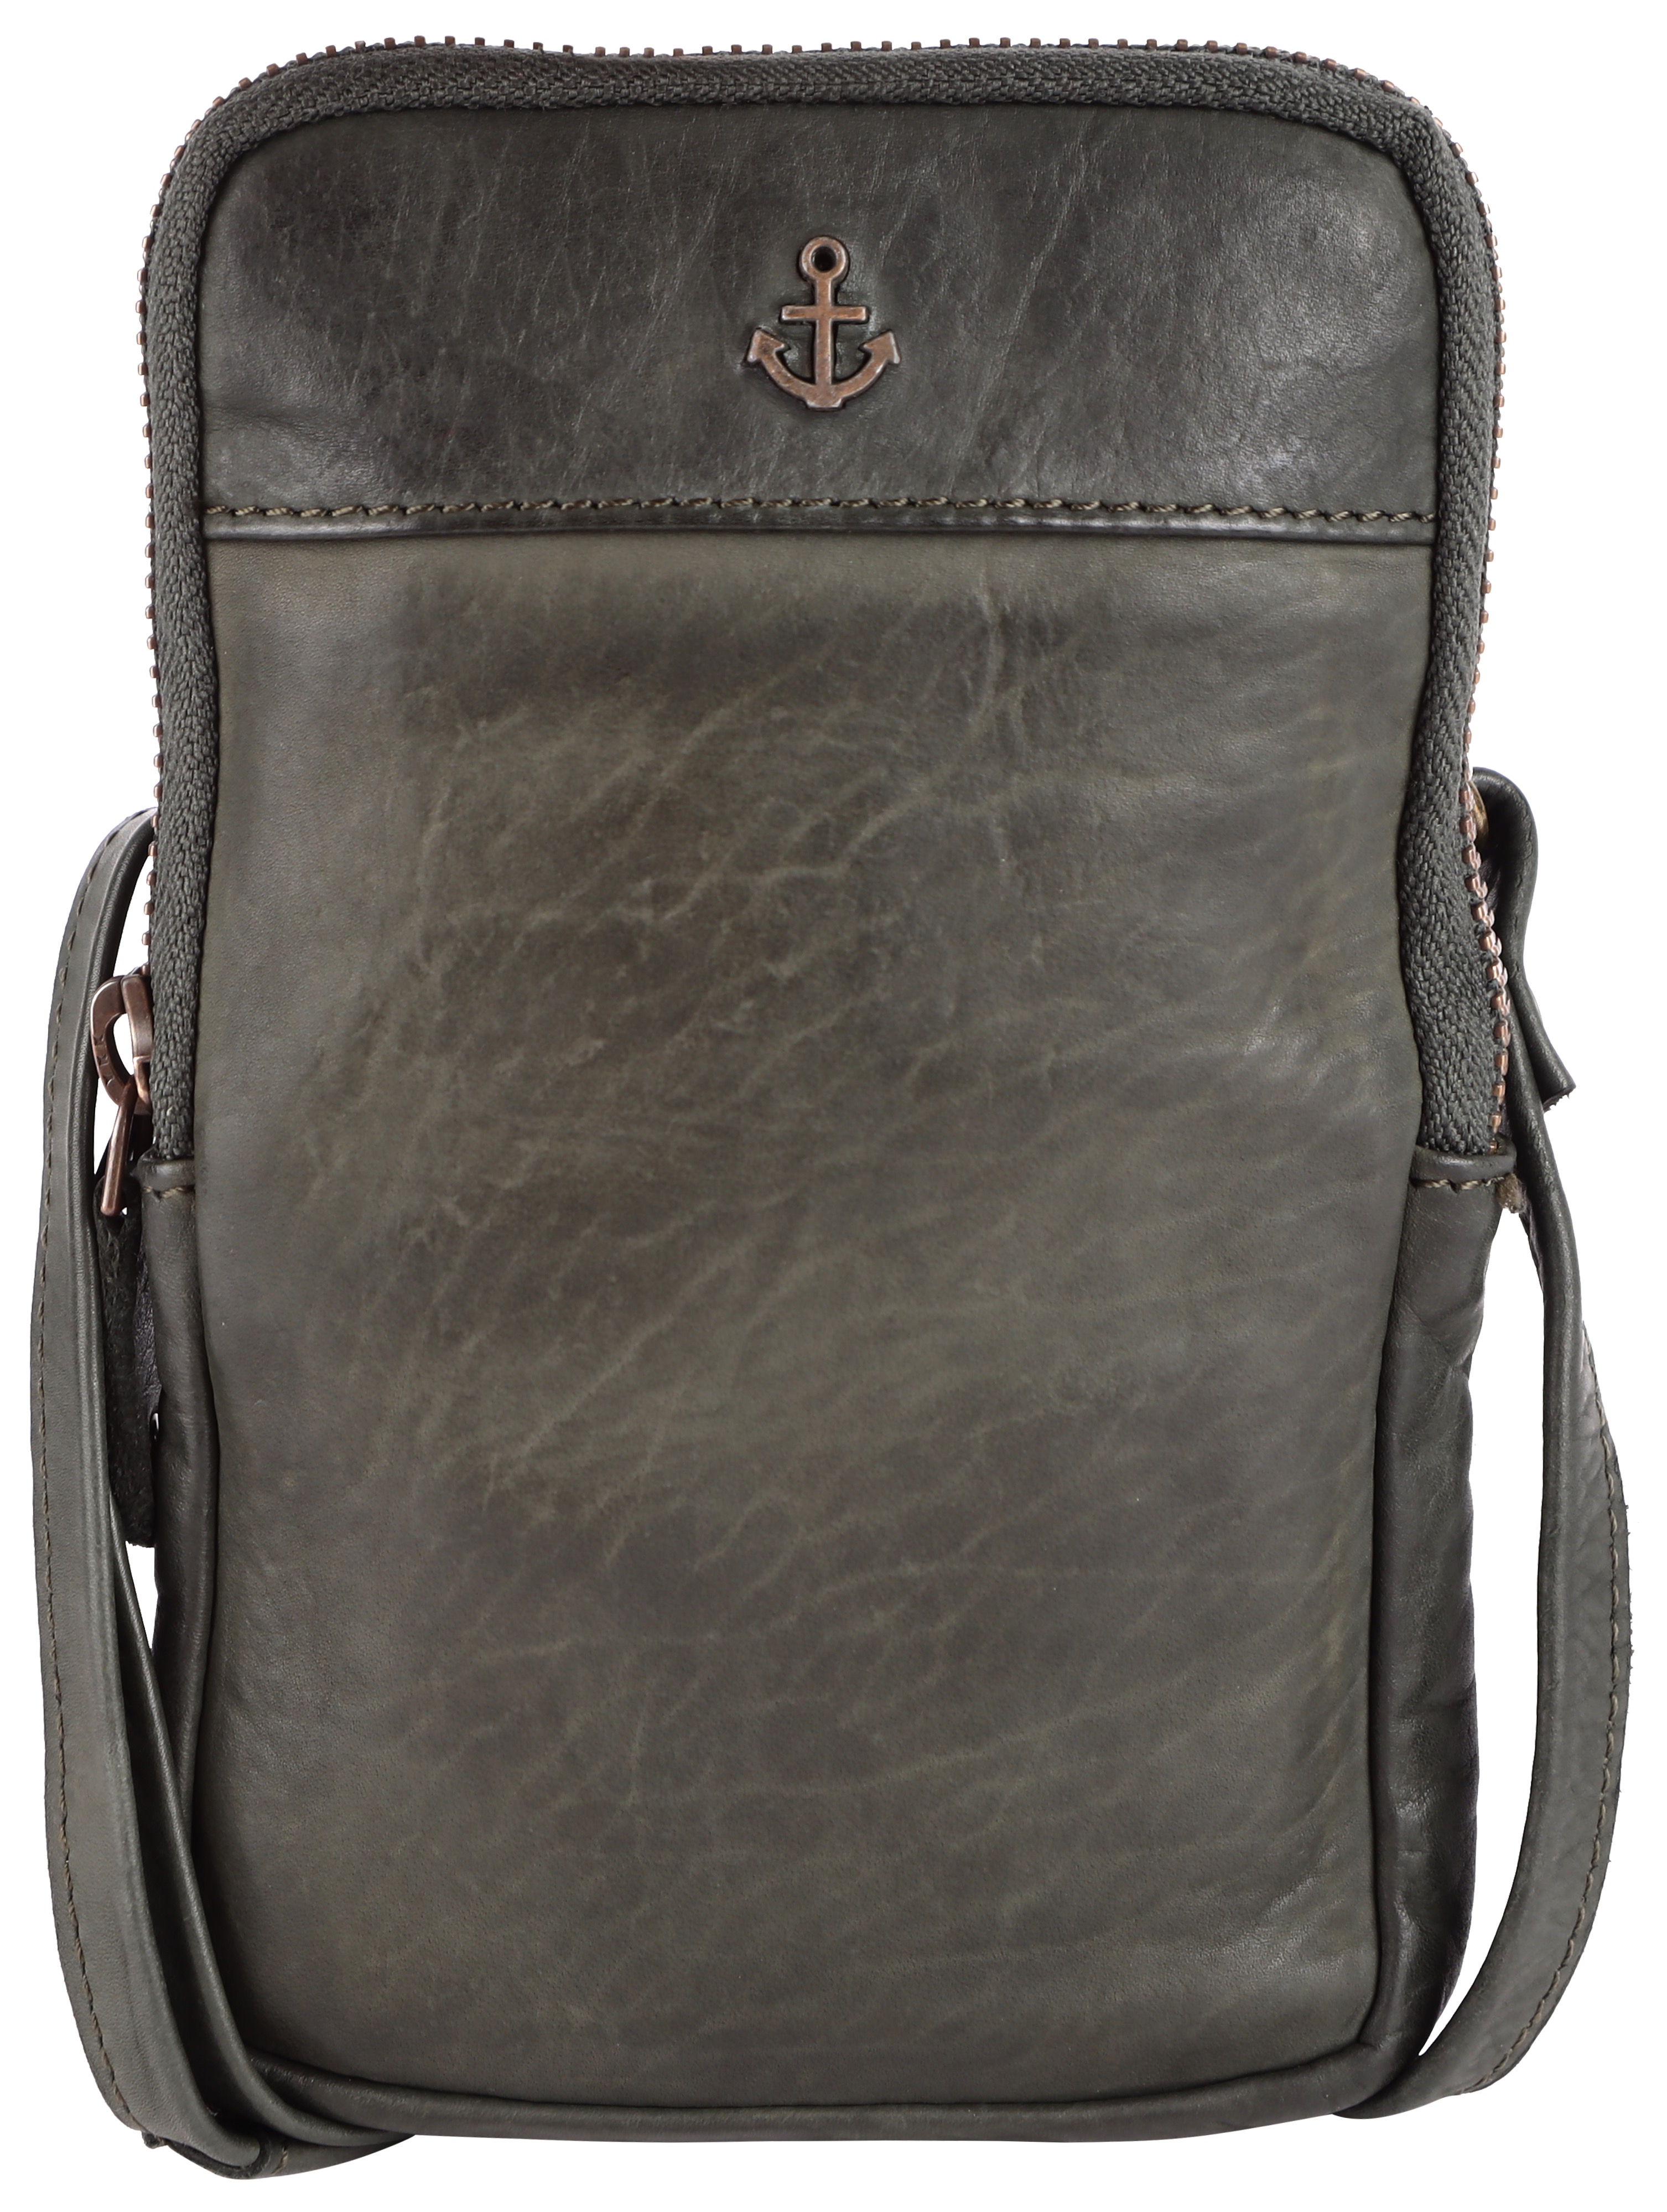 HARBOUR 2nd Mini Bag "Benita", aus griffigem Leder mit typischen Marken-Anker-Label